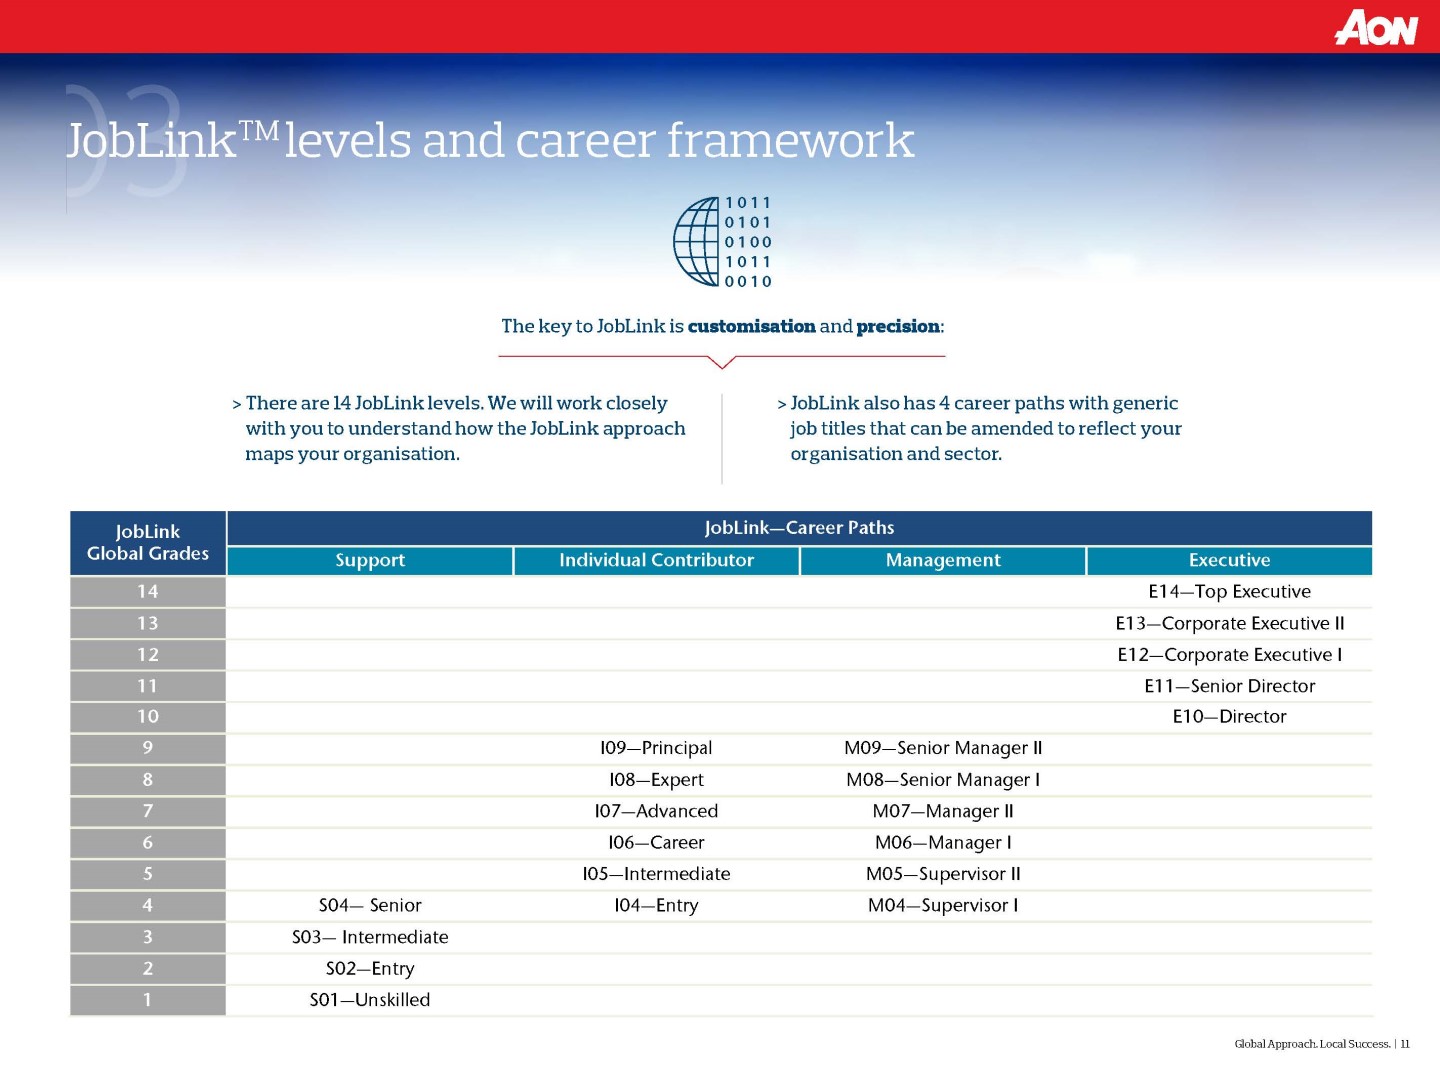 JobLink levels and career framework